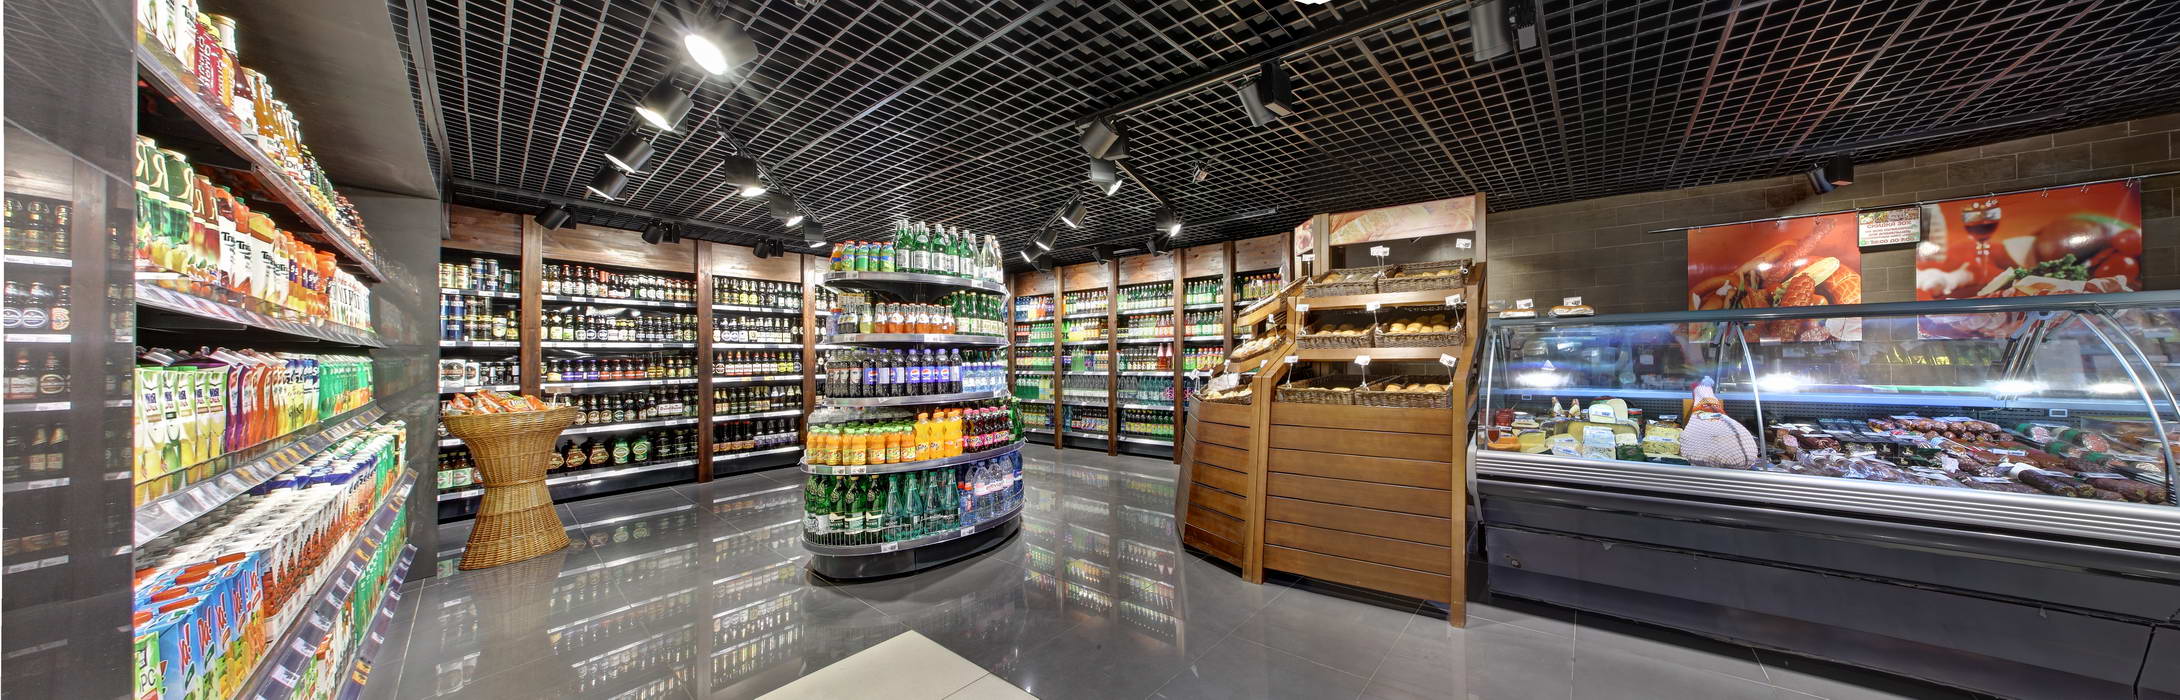 Панорама магазина продуктов